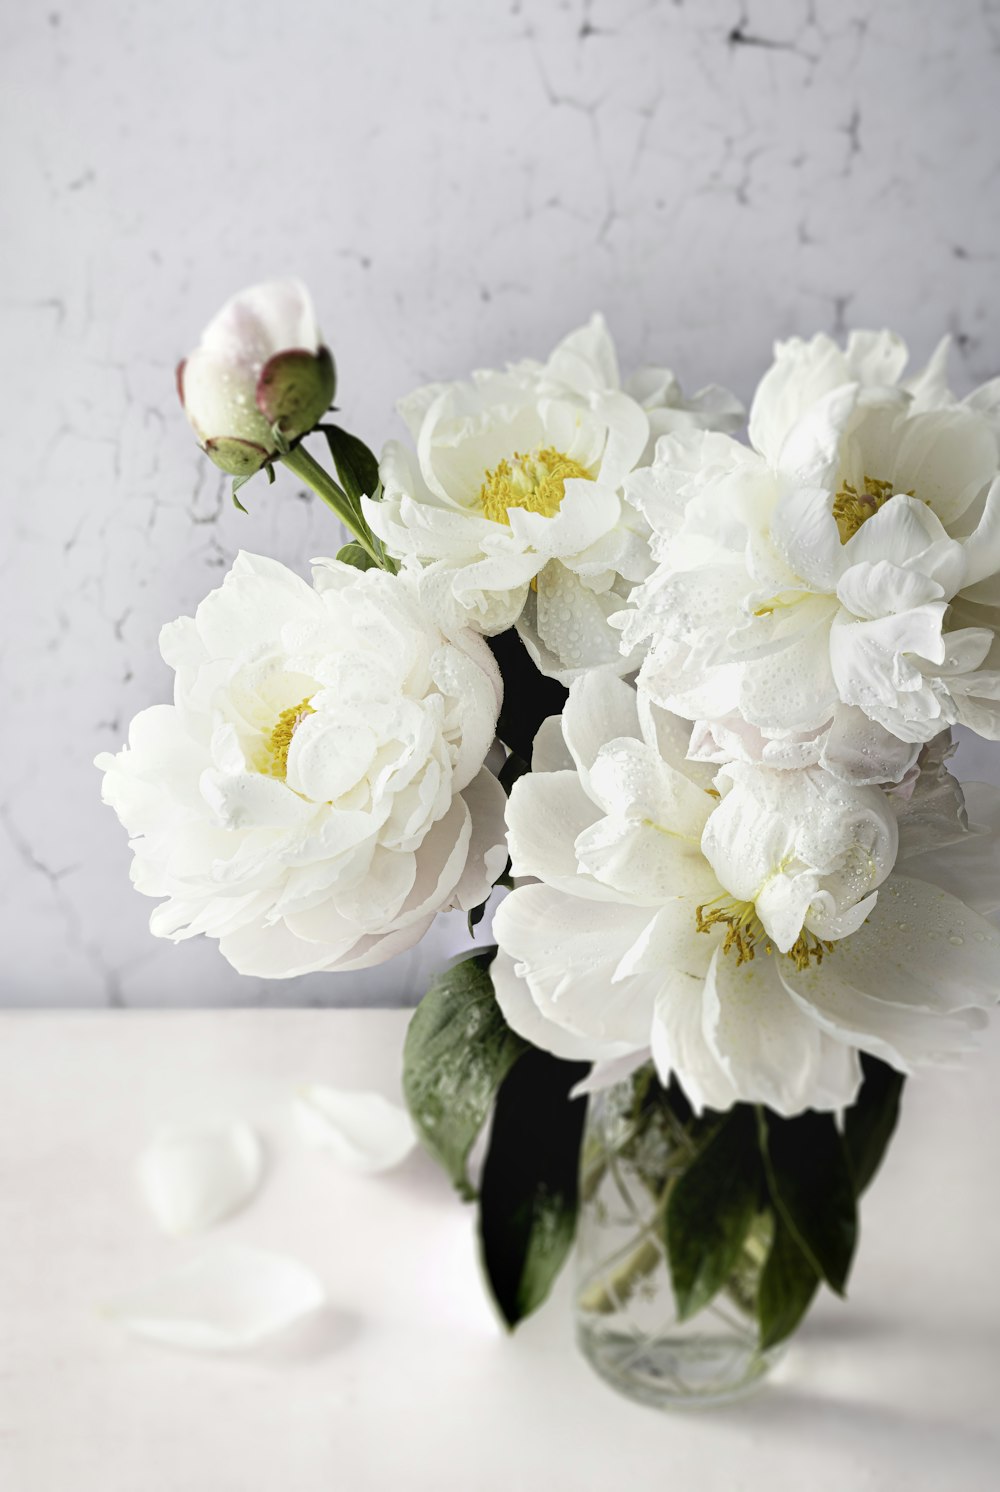 테이블 위에 흰 꽃으로 가득 찬 꽃병